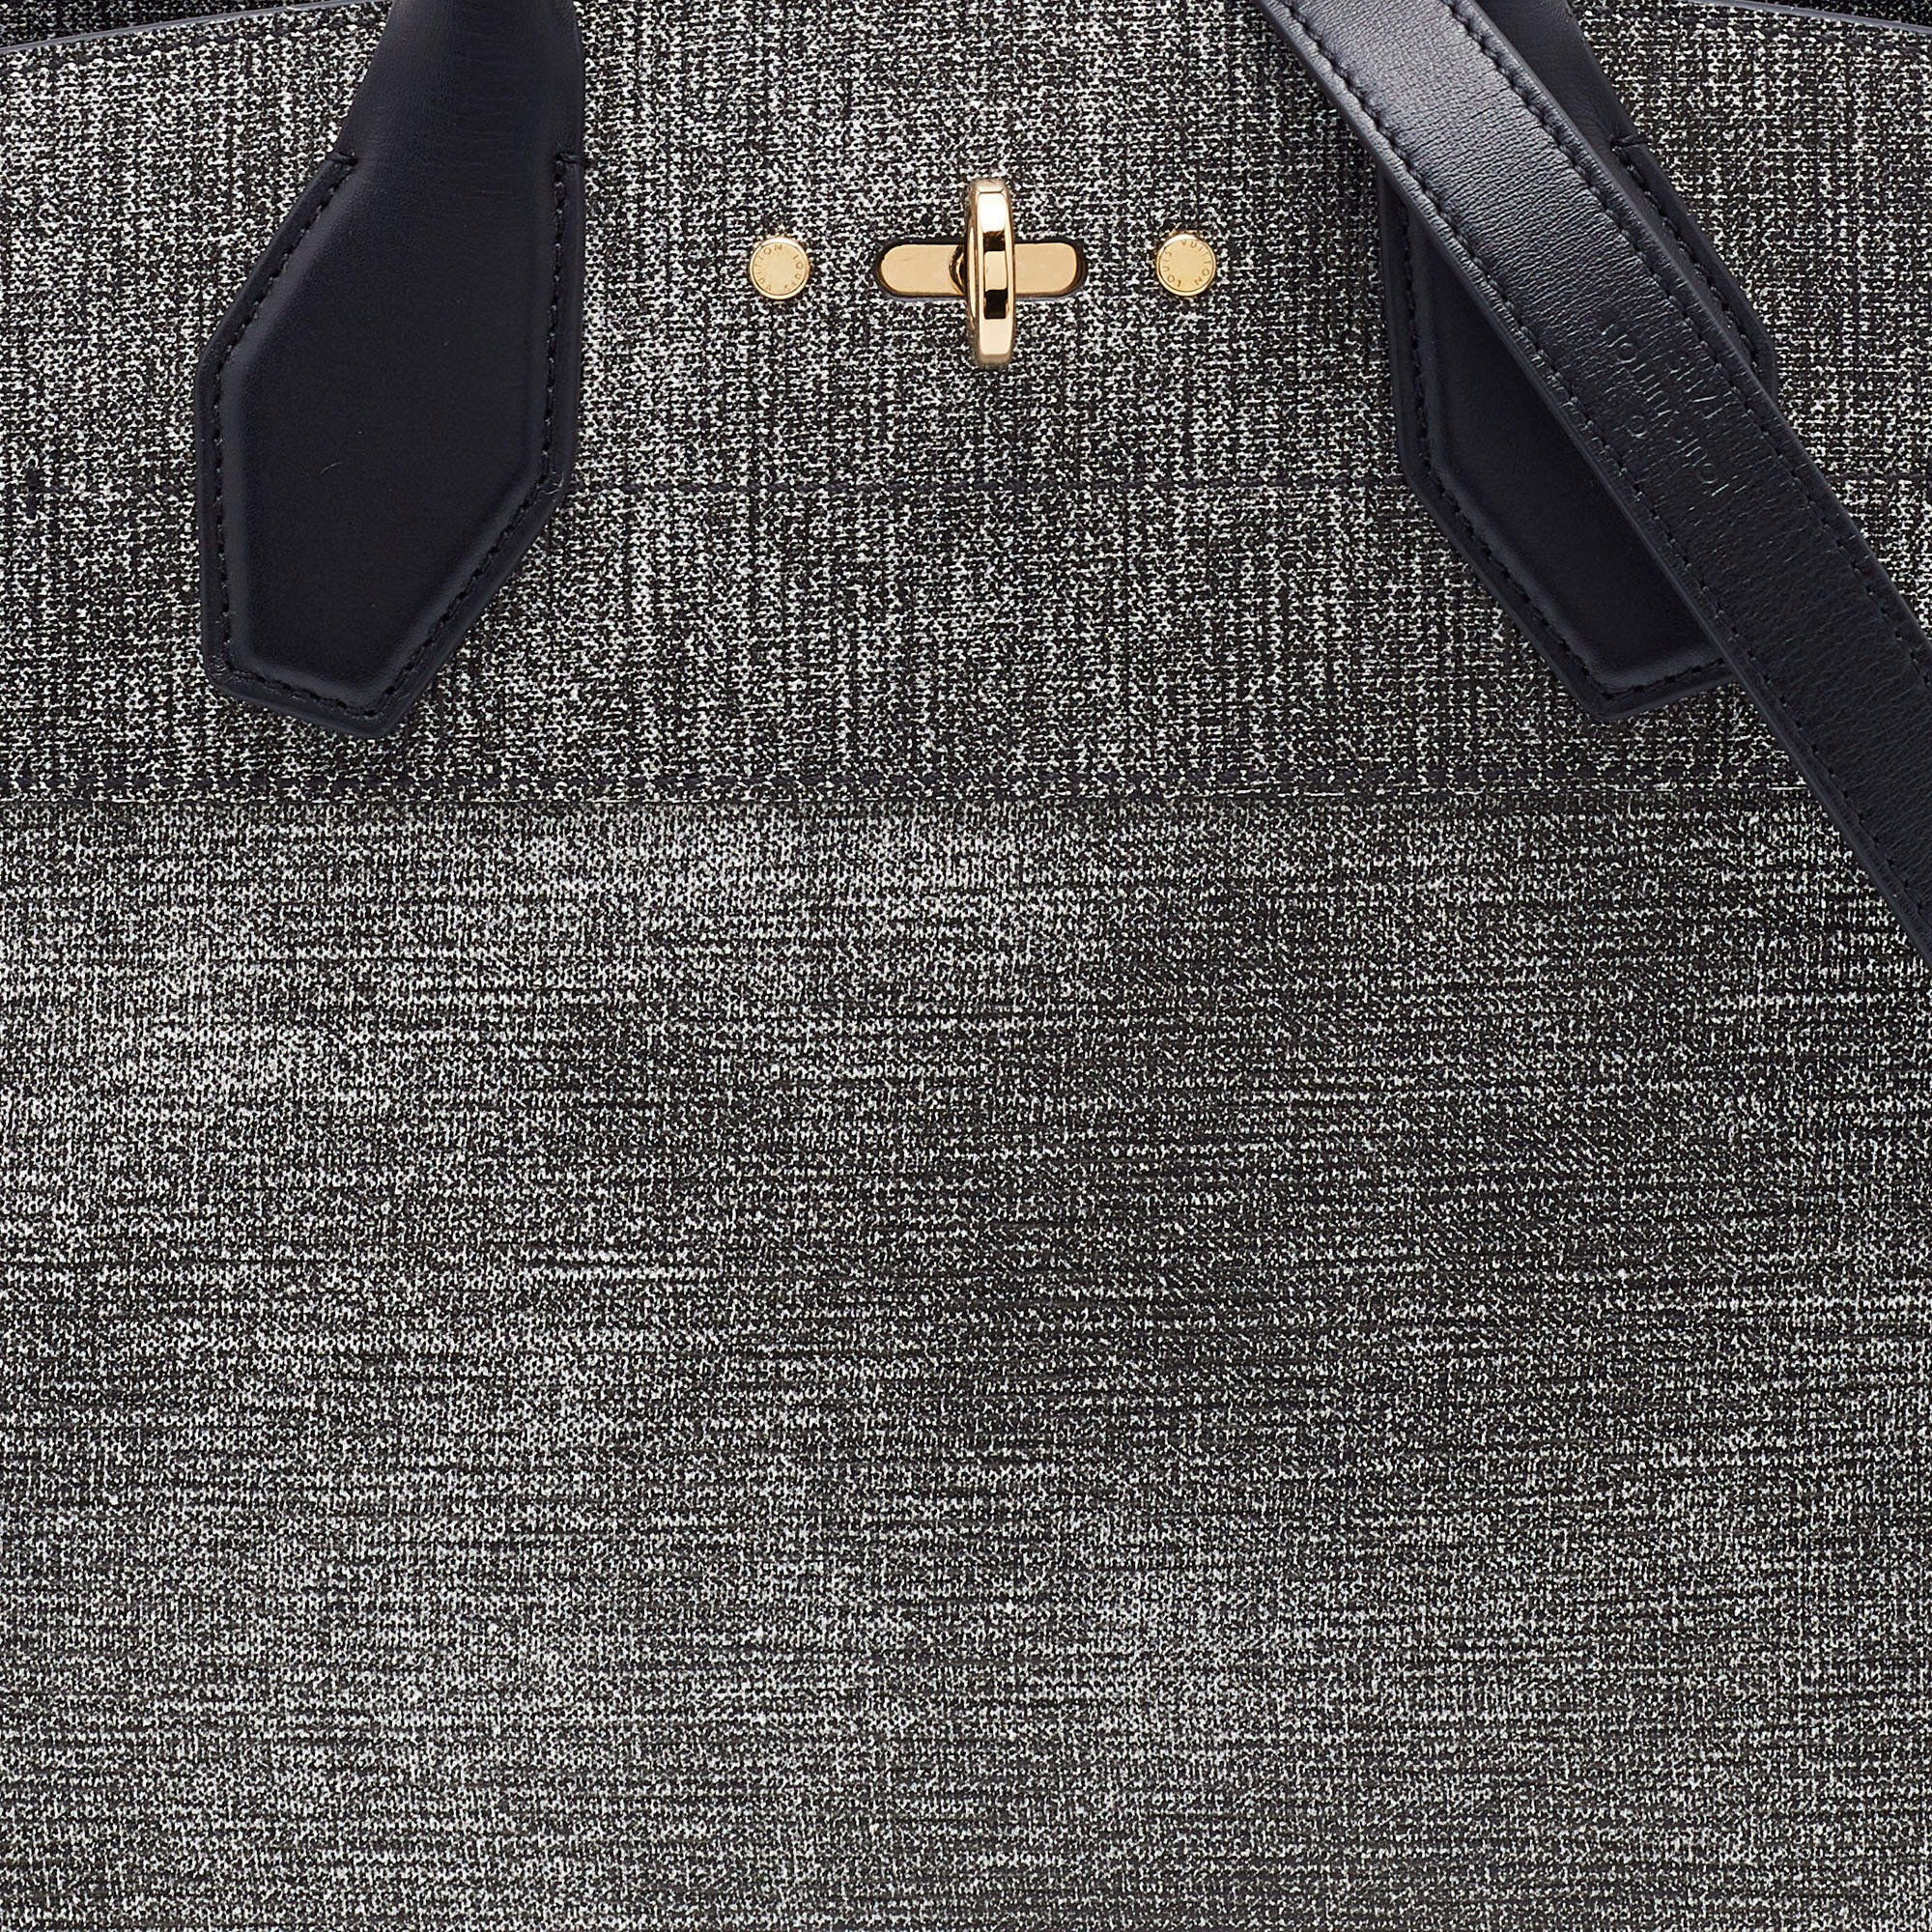 Louis Vuitton City Steamer GM Noir Black Leather Bag